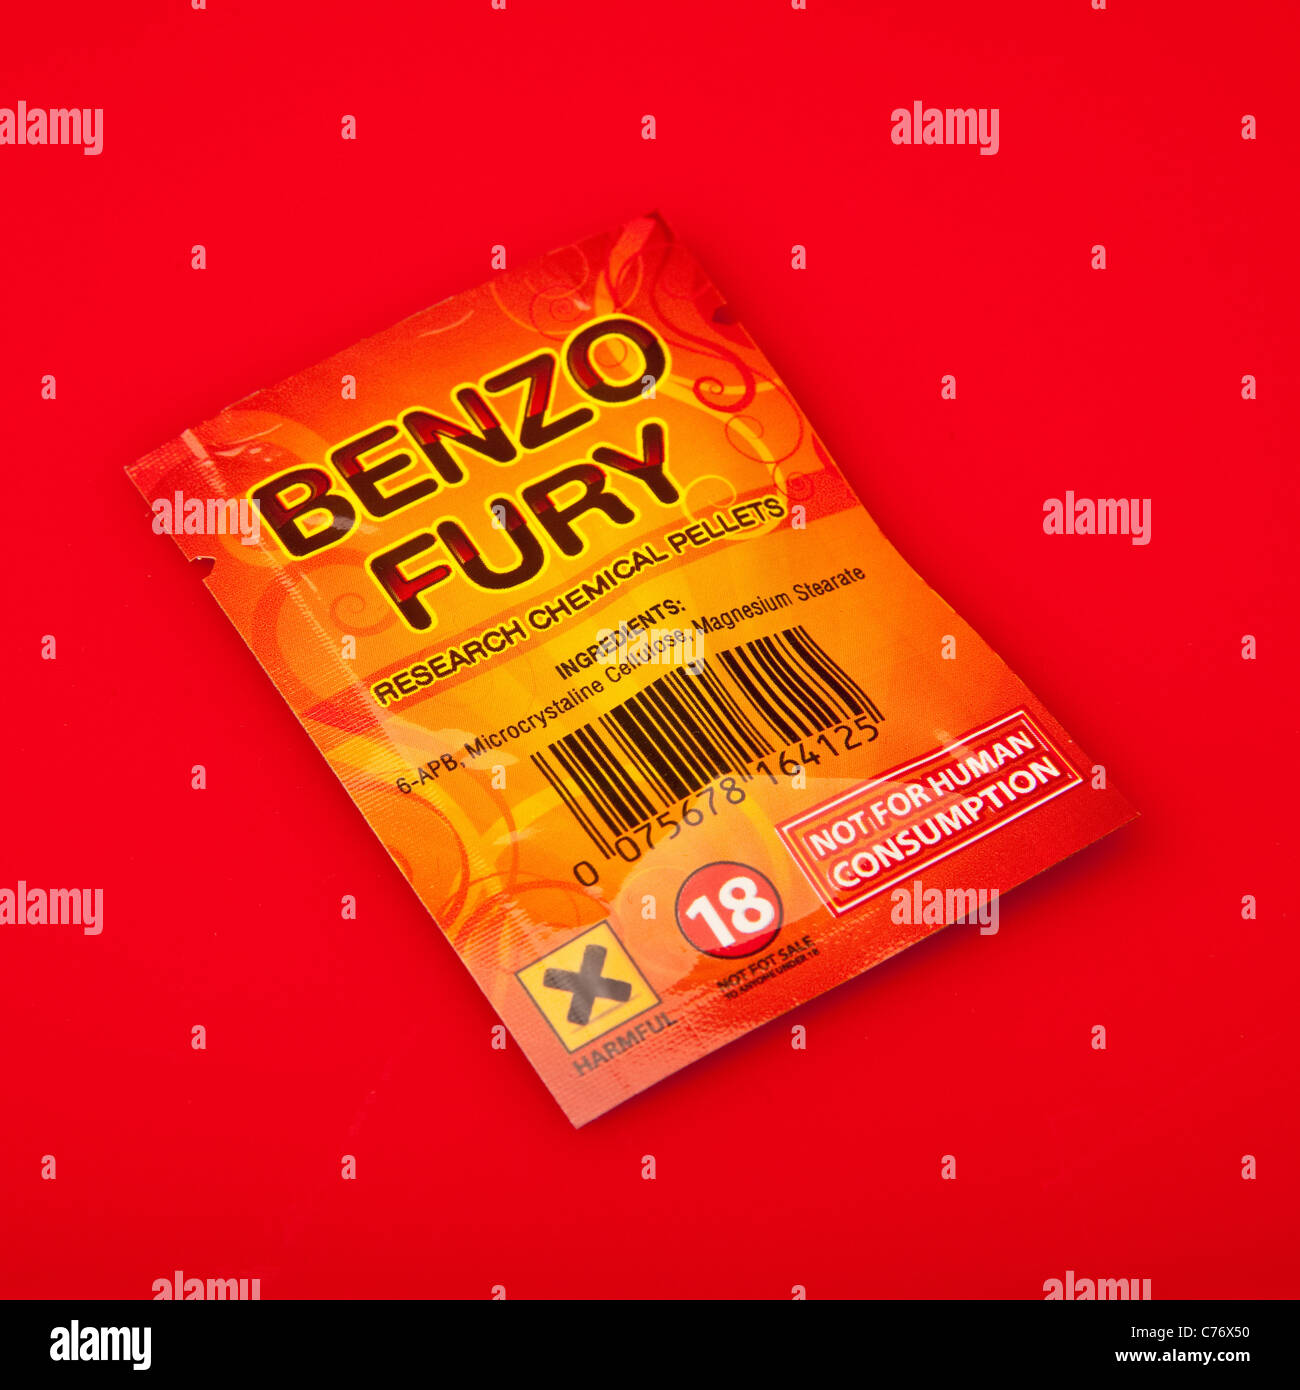 Paket von Benzo Fury, 6-APDB ist eine rechtliche hoch oder "Research Chemical" mit ähnlicher Wirkung zu den illegalen Droge MDMA und Ekstase. Stockfoto